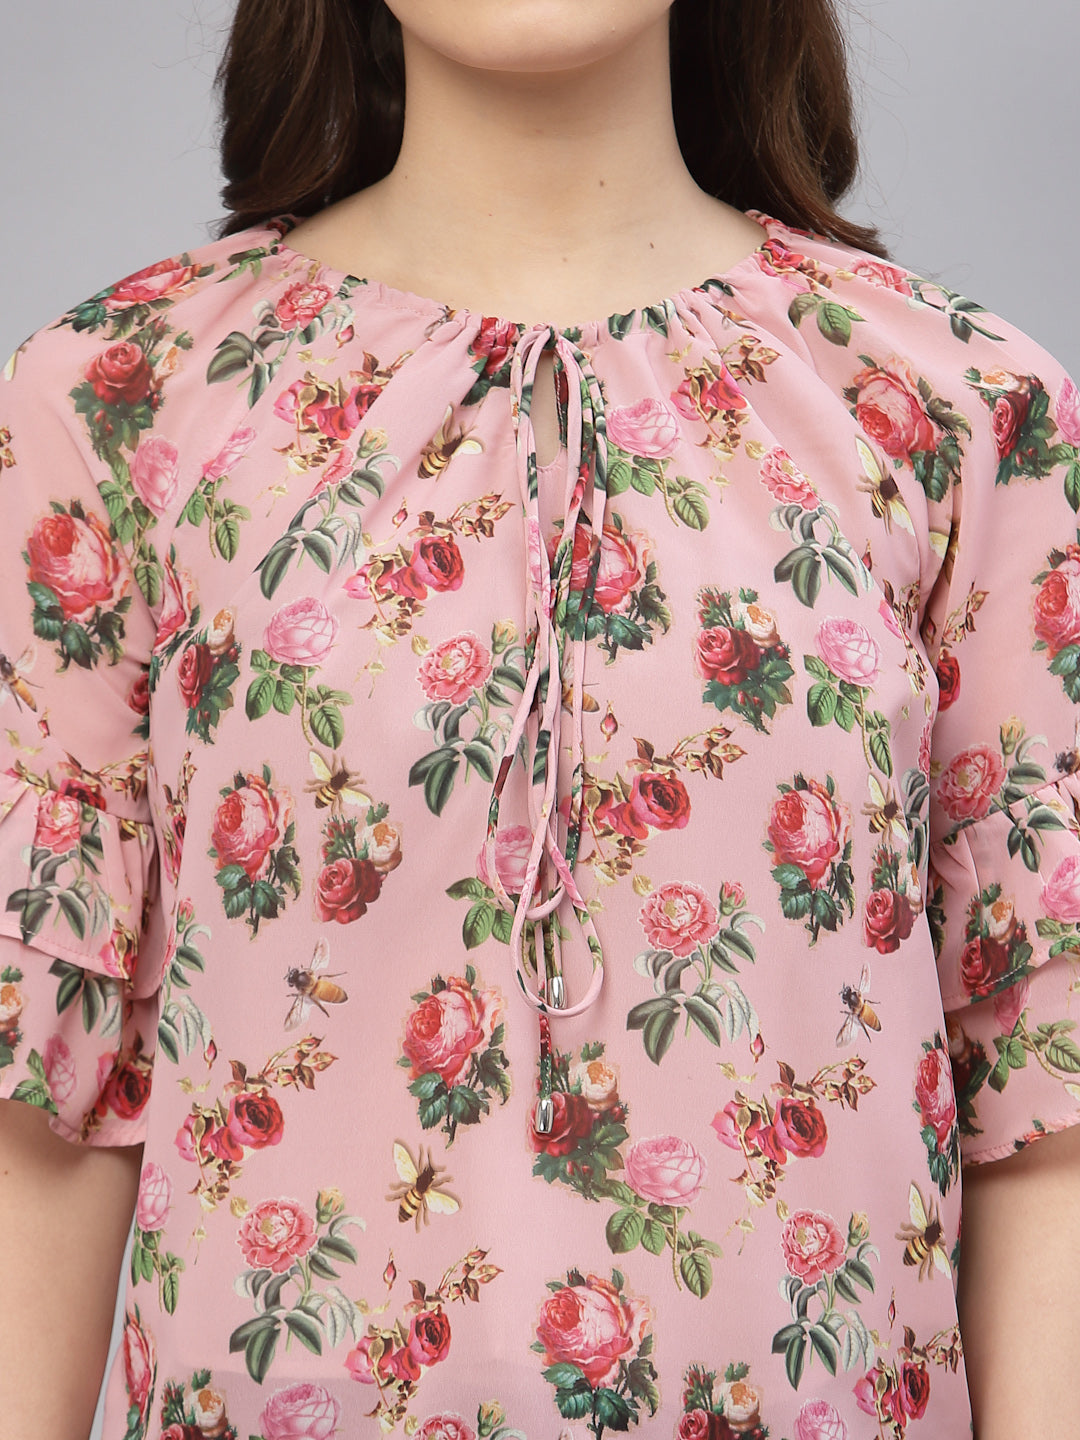 Valbone Women's Georgette Light Pink Floral Print Tie Neck Top Half-Sleeves